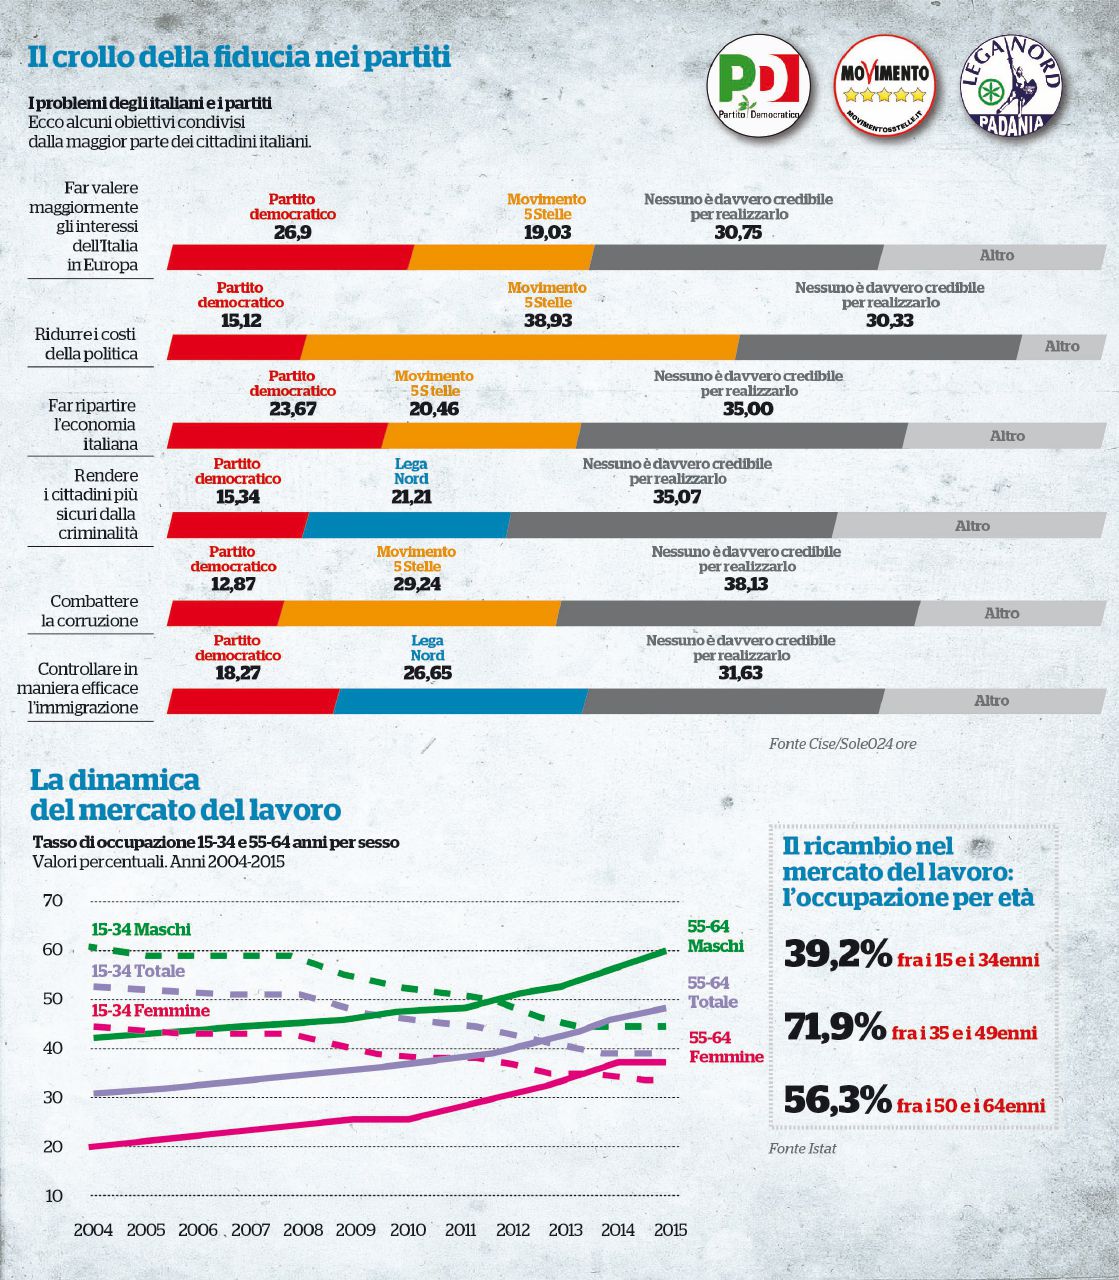 Copertina di Povera, vecchia e disuguale. L’Italia 2015 secondo Istat